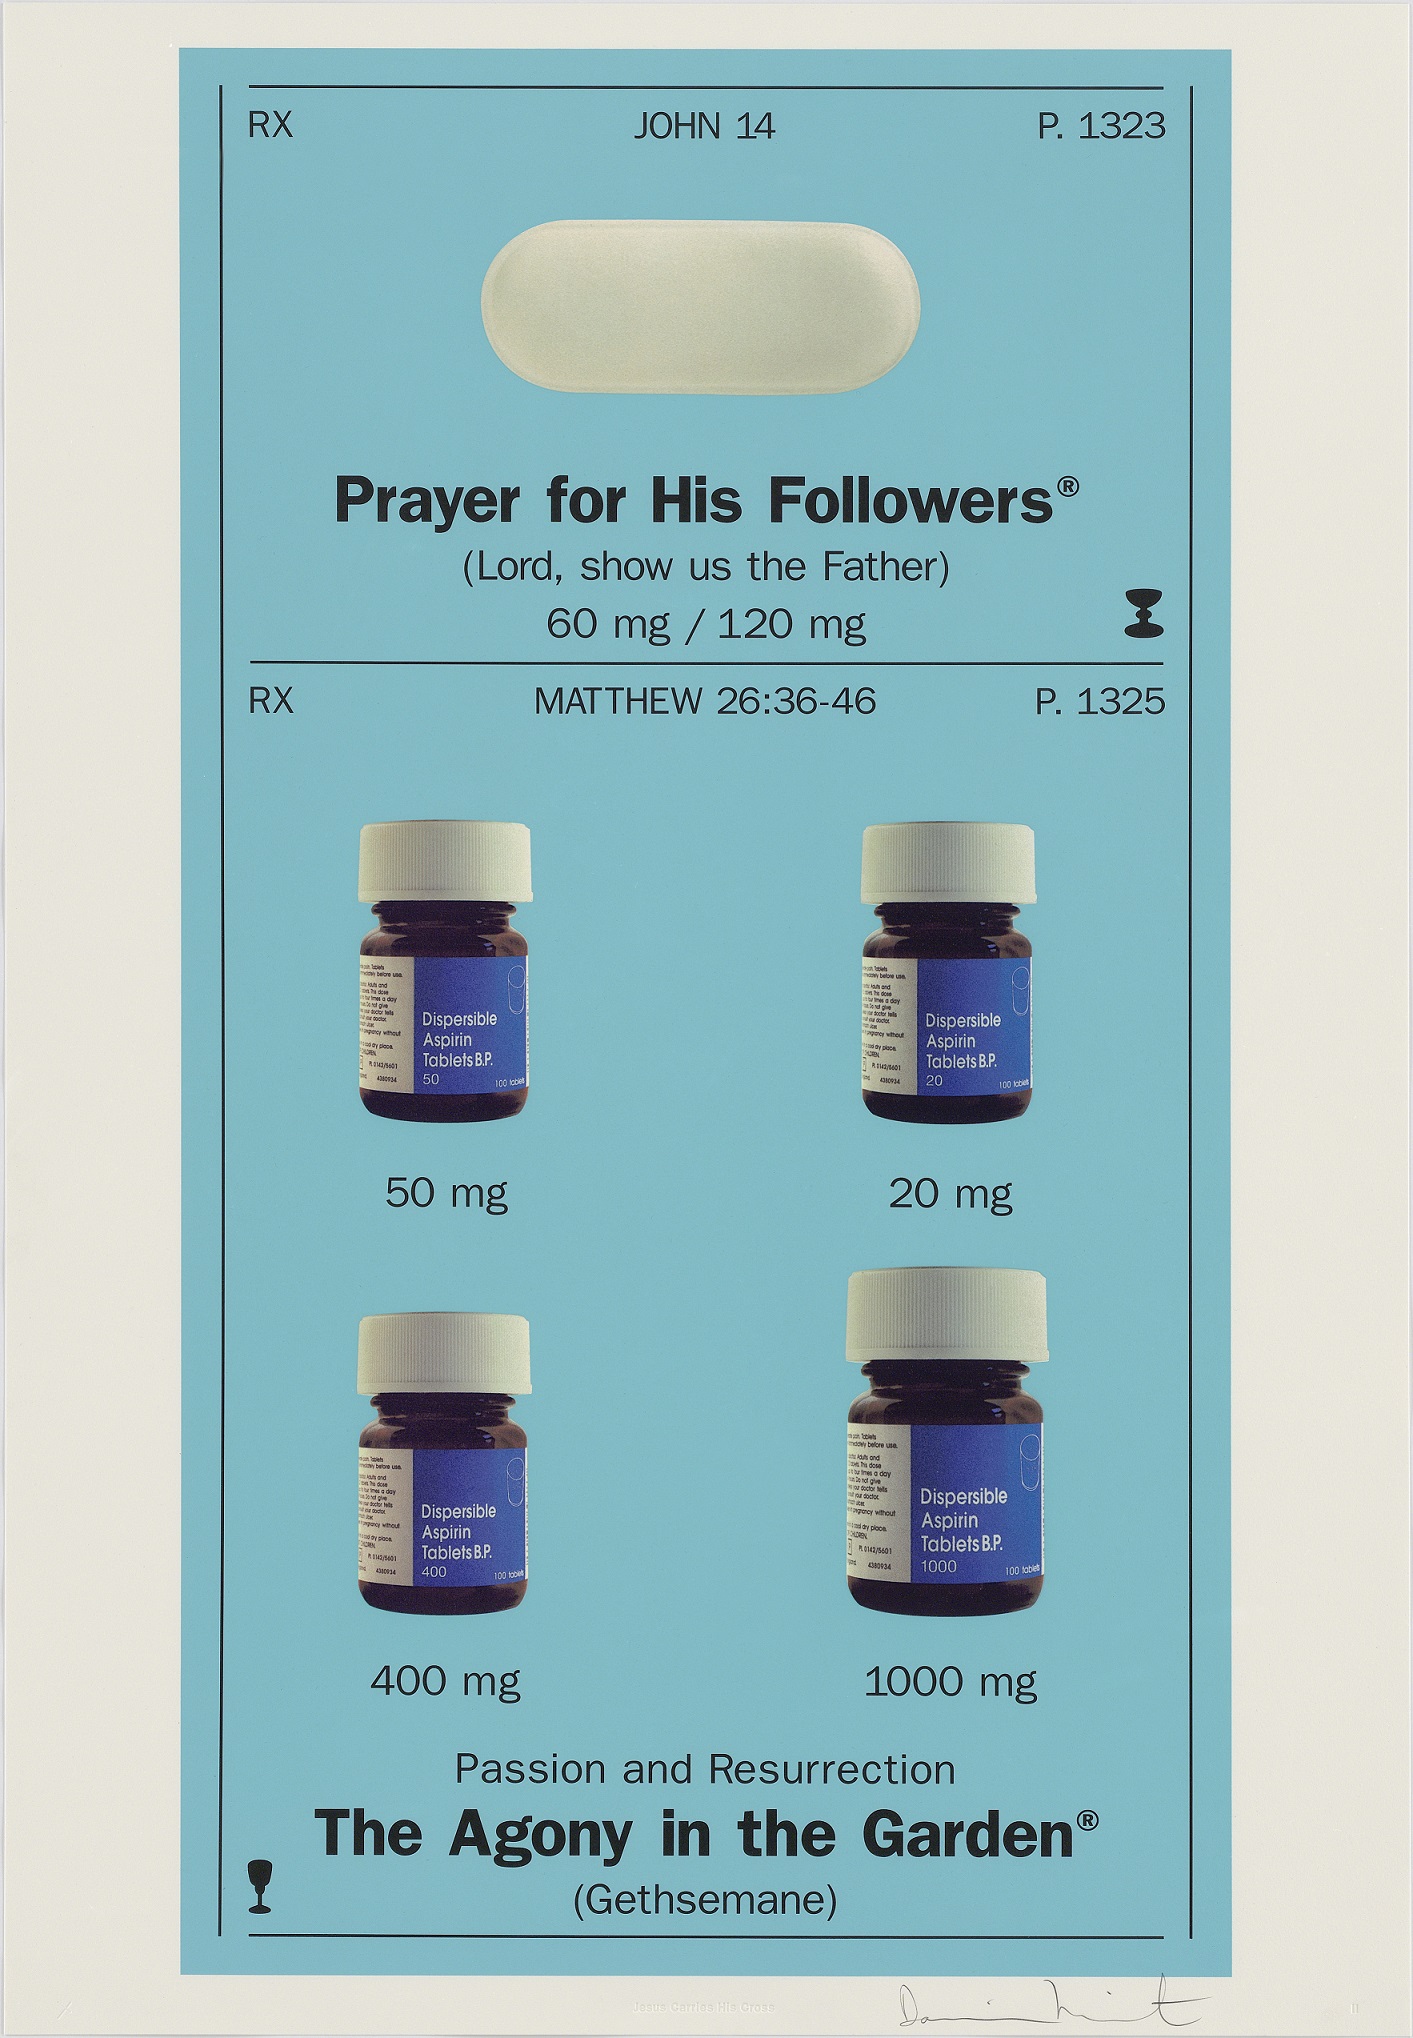 Dzieło autorstwa Damiena Hirsta w postaci plakatu z niebieskim tłem. Na plakacie znajdują się zdjęcia pigułek z opisem, przypominającym etykietę farmaceutyczną leku, ale zamiast informacji o zawartości leku, podano sakralne wyrażenia oraz nazwy modlitw.